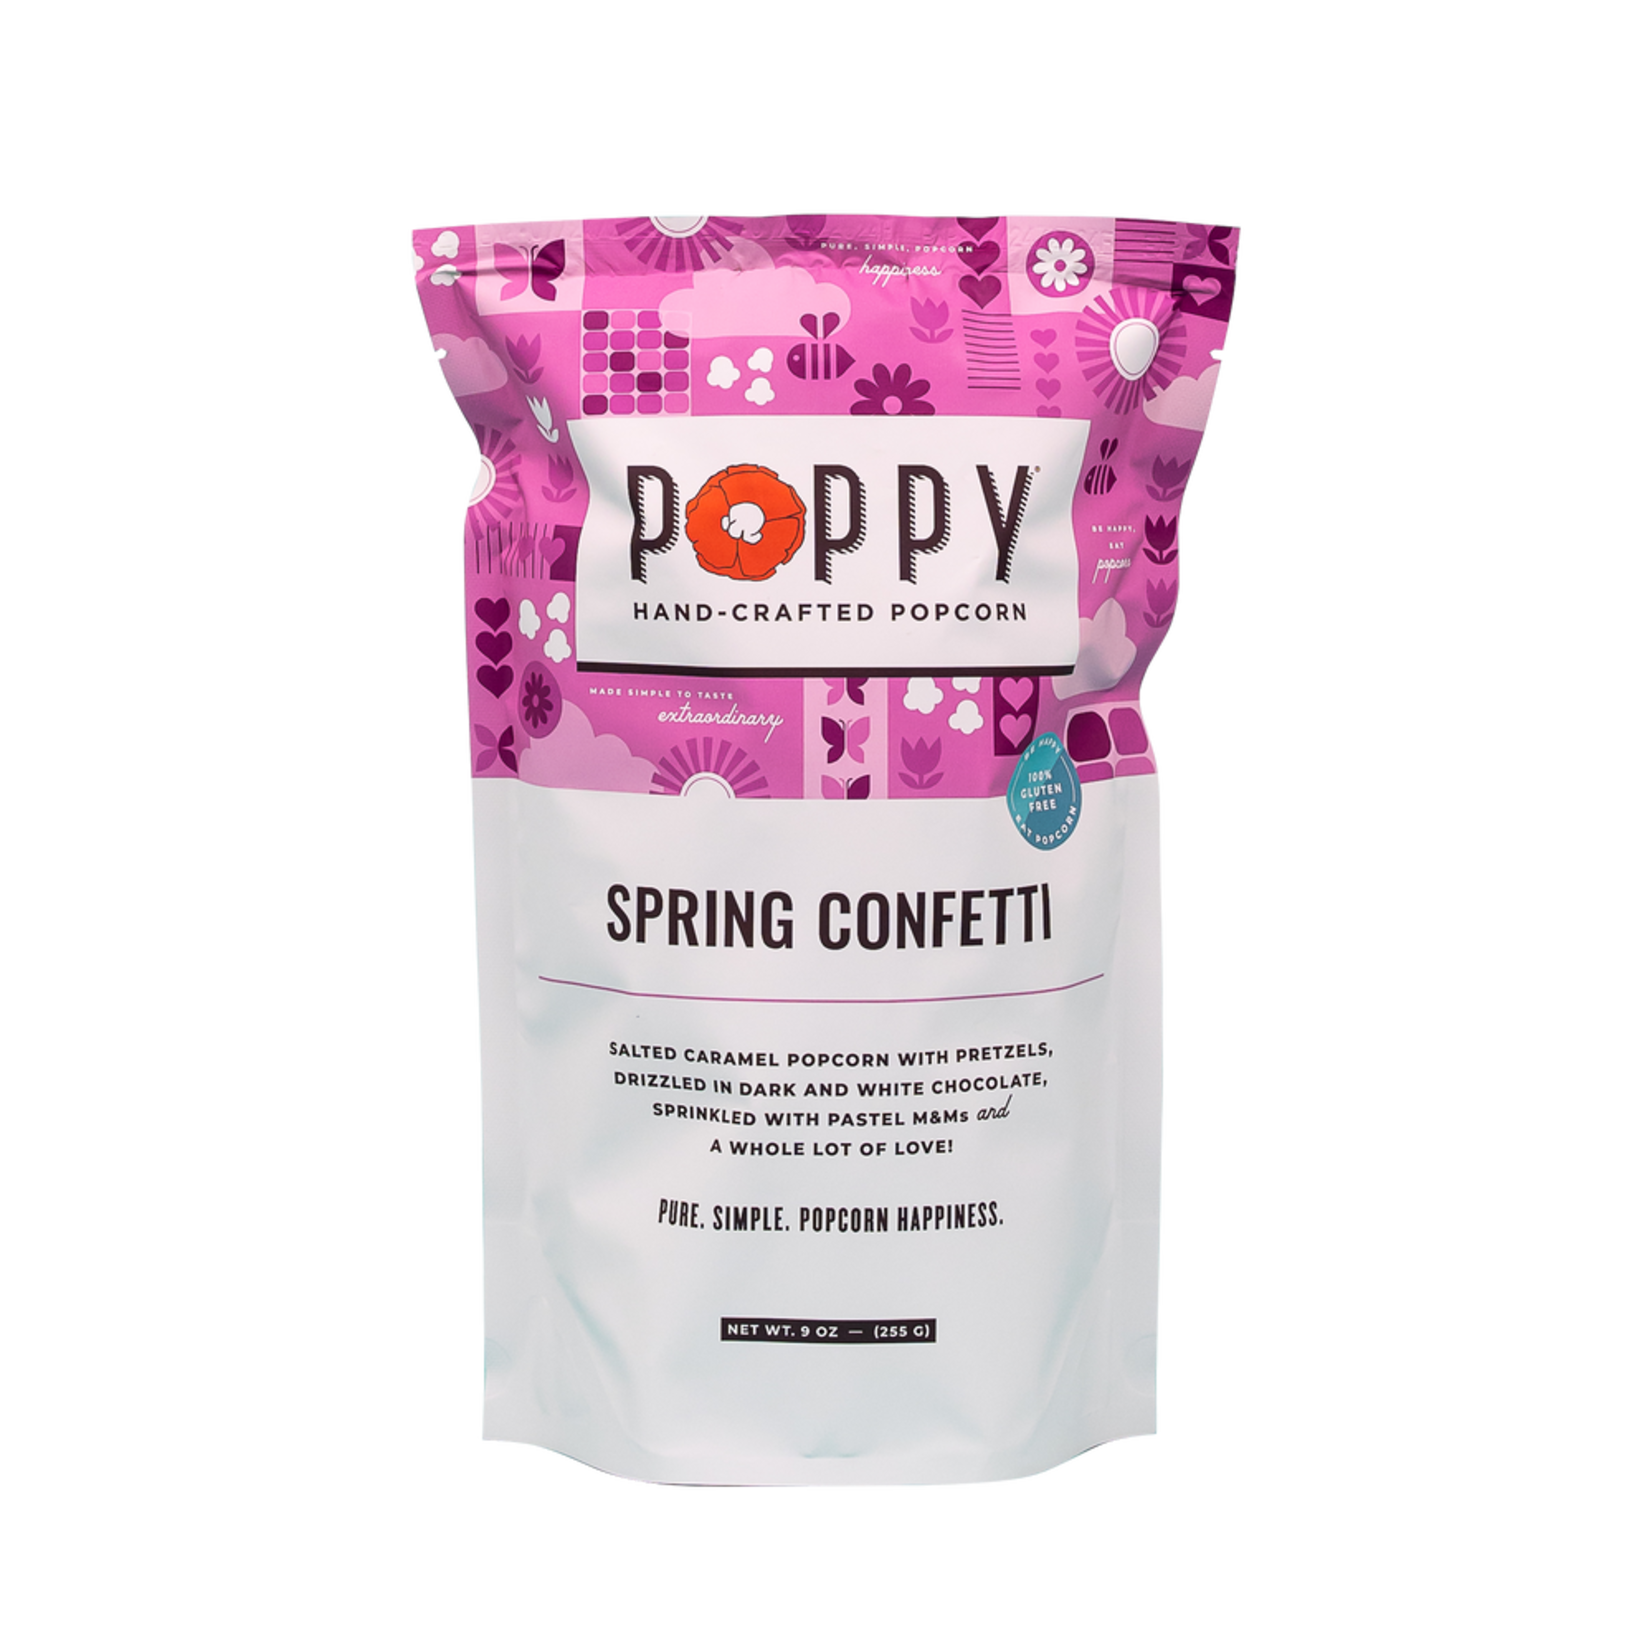 Poppy Handcrafted Popcorn Poppy Handcrafted Popcorn - Spring Confetti